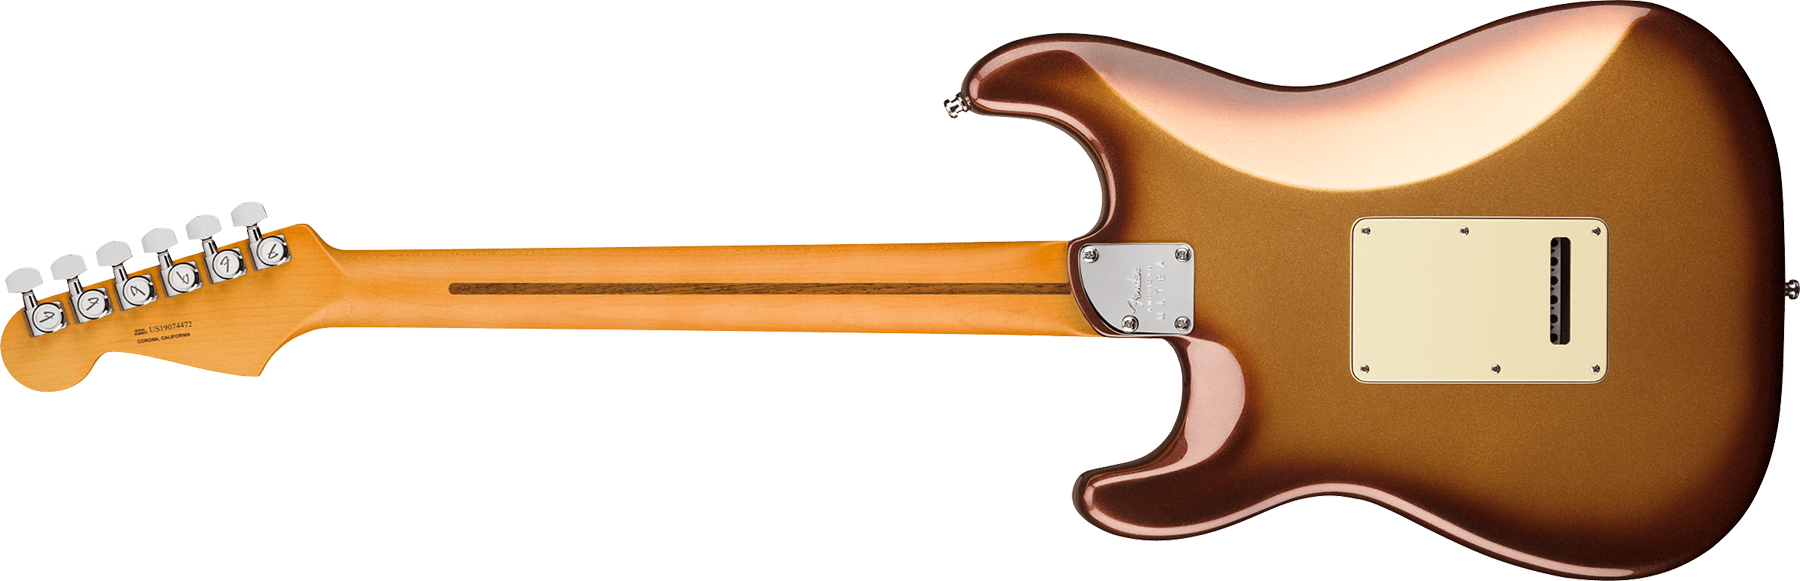 Fender Strat American Ultra 2019 Usa Mn - Mocha Burst - Elektrische gitaar in Str-vorm - Variation 2